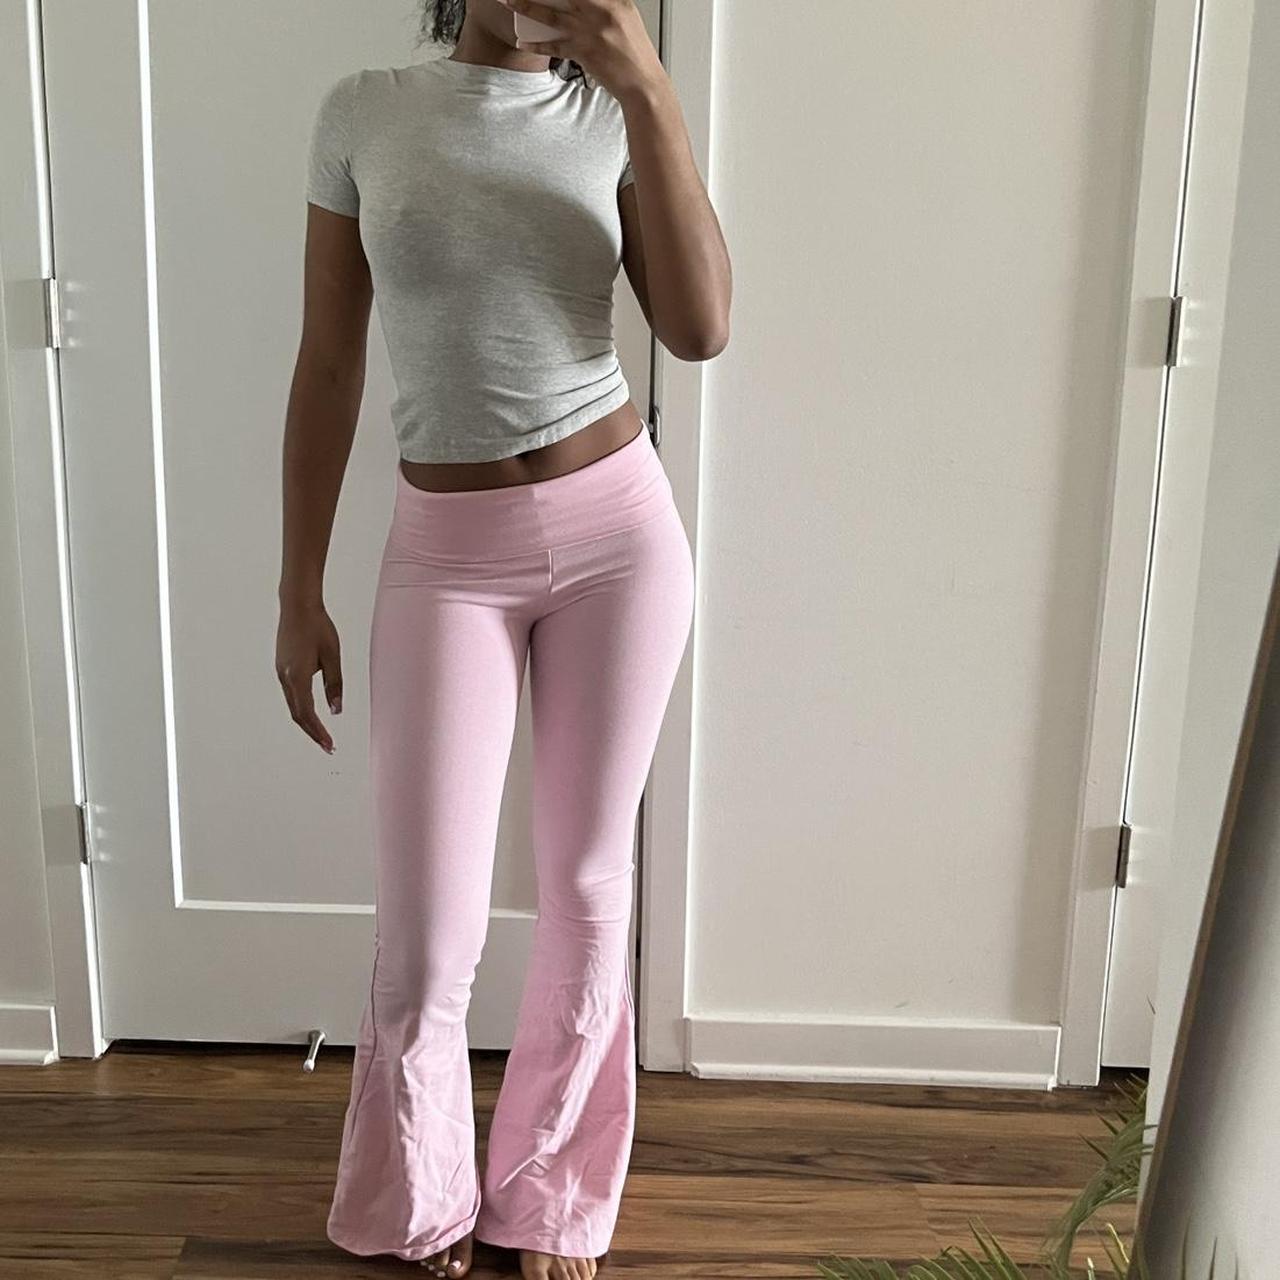 Flare leggings from Victoria Secret/ Pink - Depop